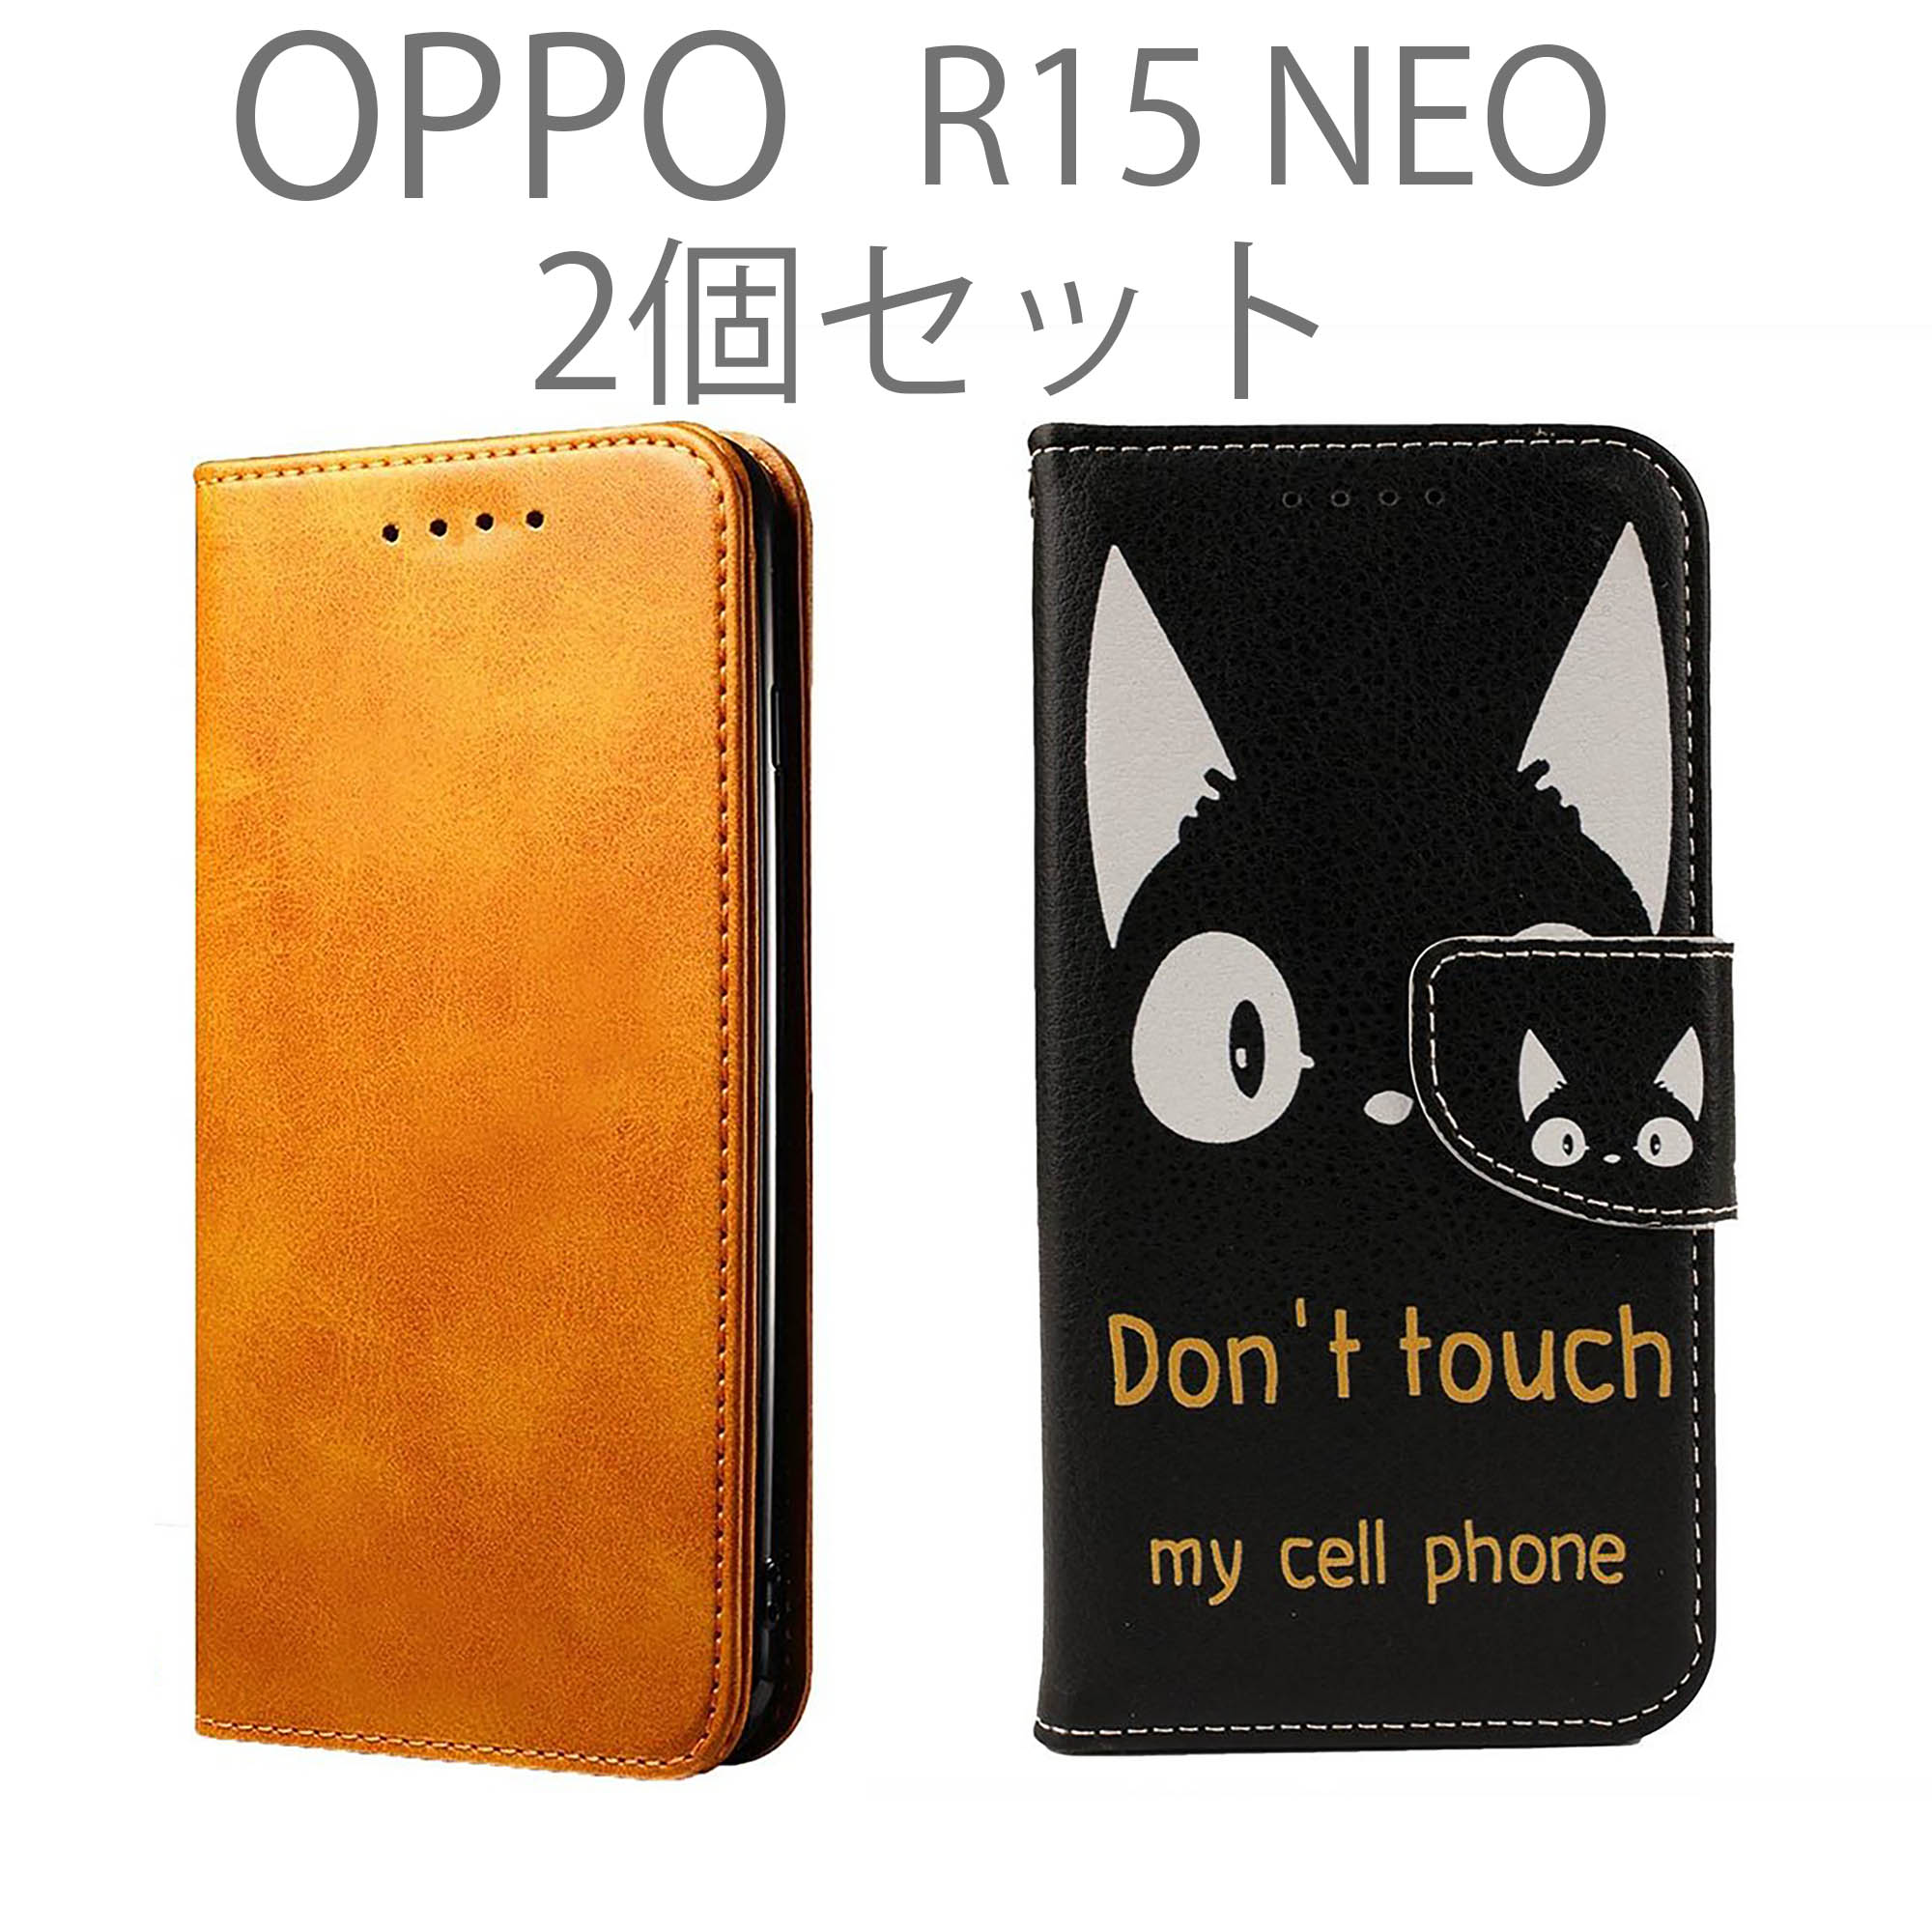 OPPO R15neo ケース 手帳型 2個 セット R15 neo スマホケース オッポ レザー 革 カバー 無地 シンプル 黒 白 ブラウン アニマル 猫 ねこ 送料無料